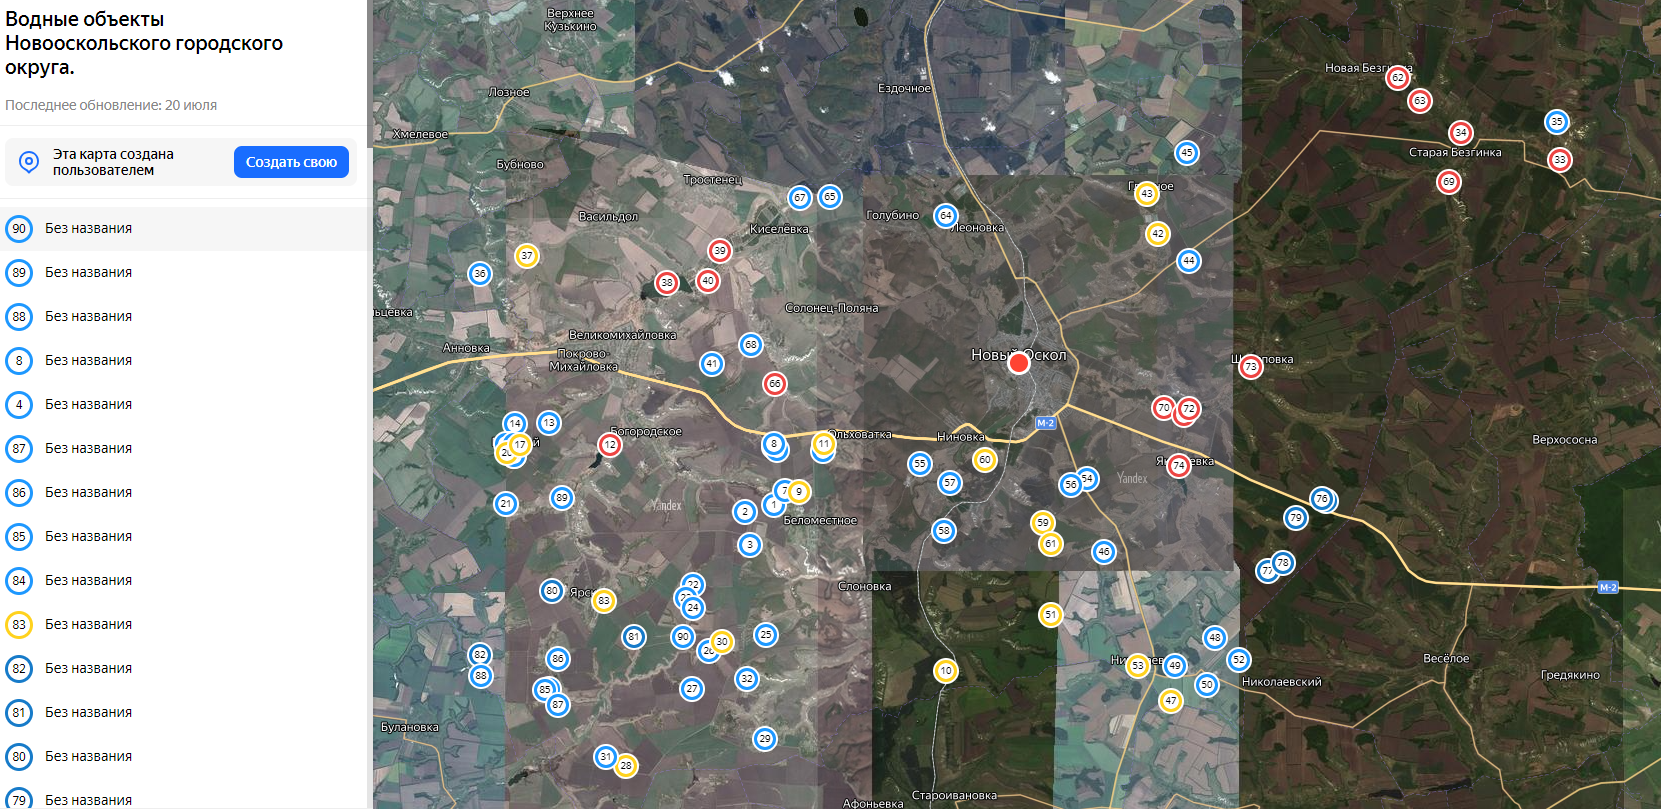 Карта водных объектов Новооскольского городского округа.